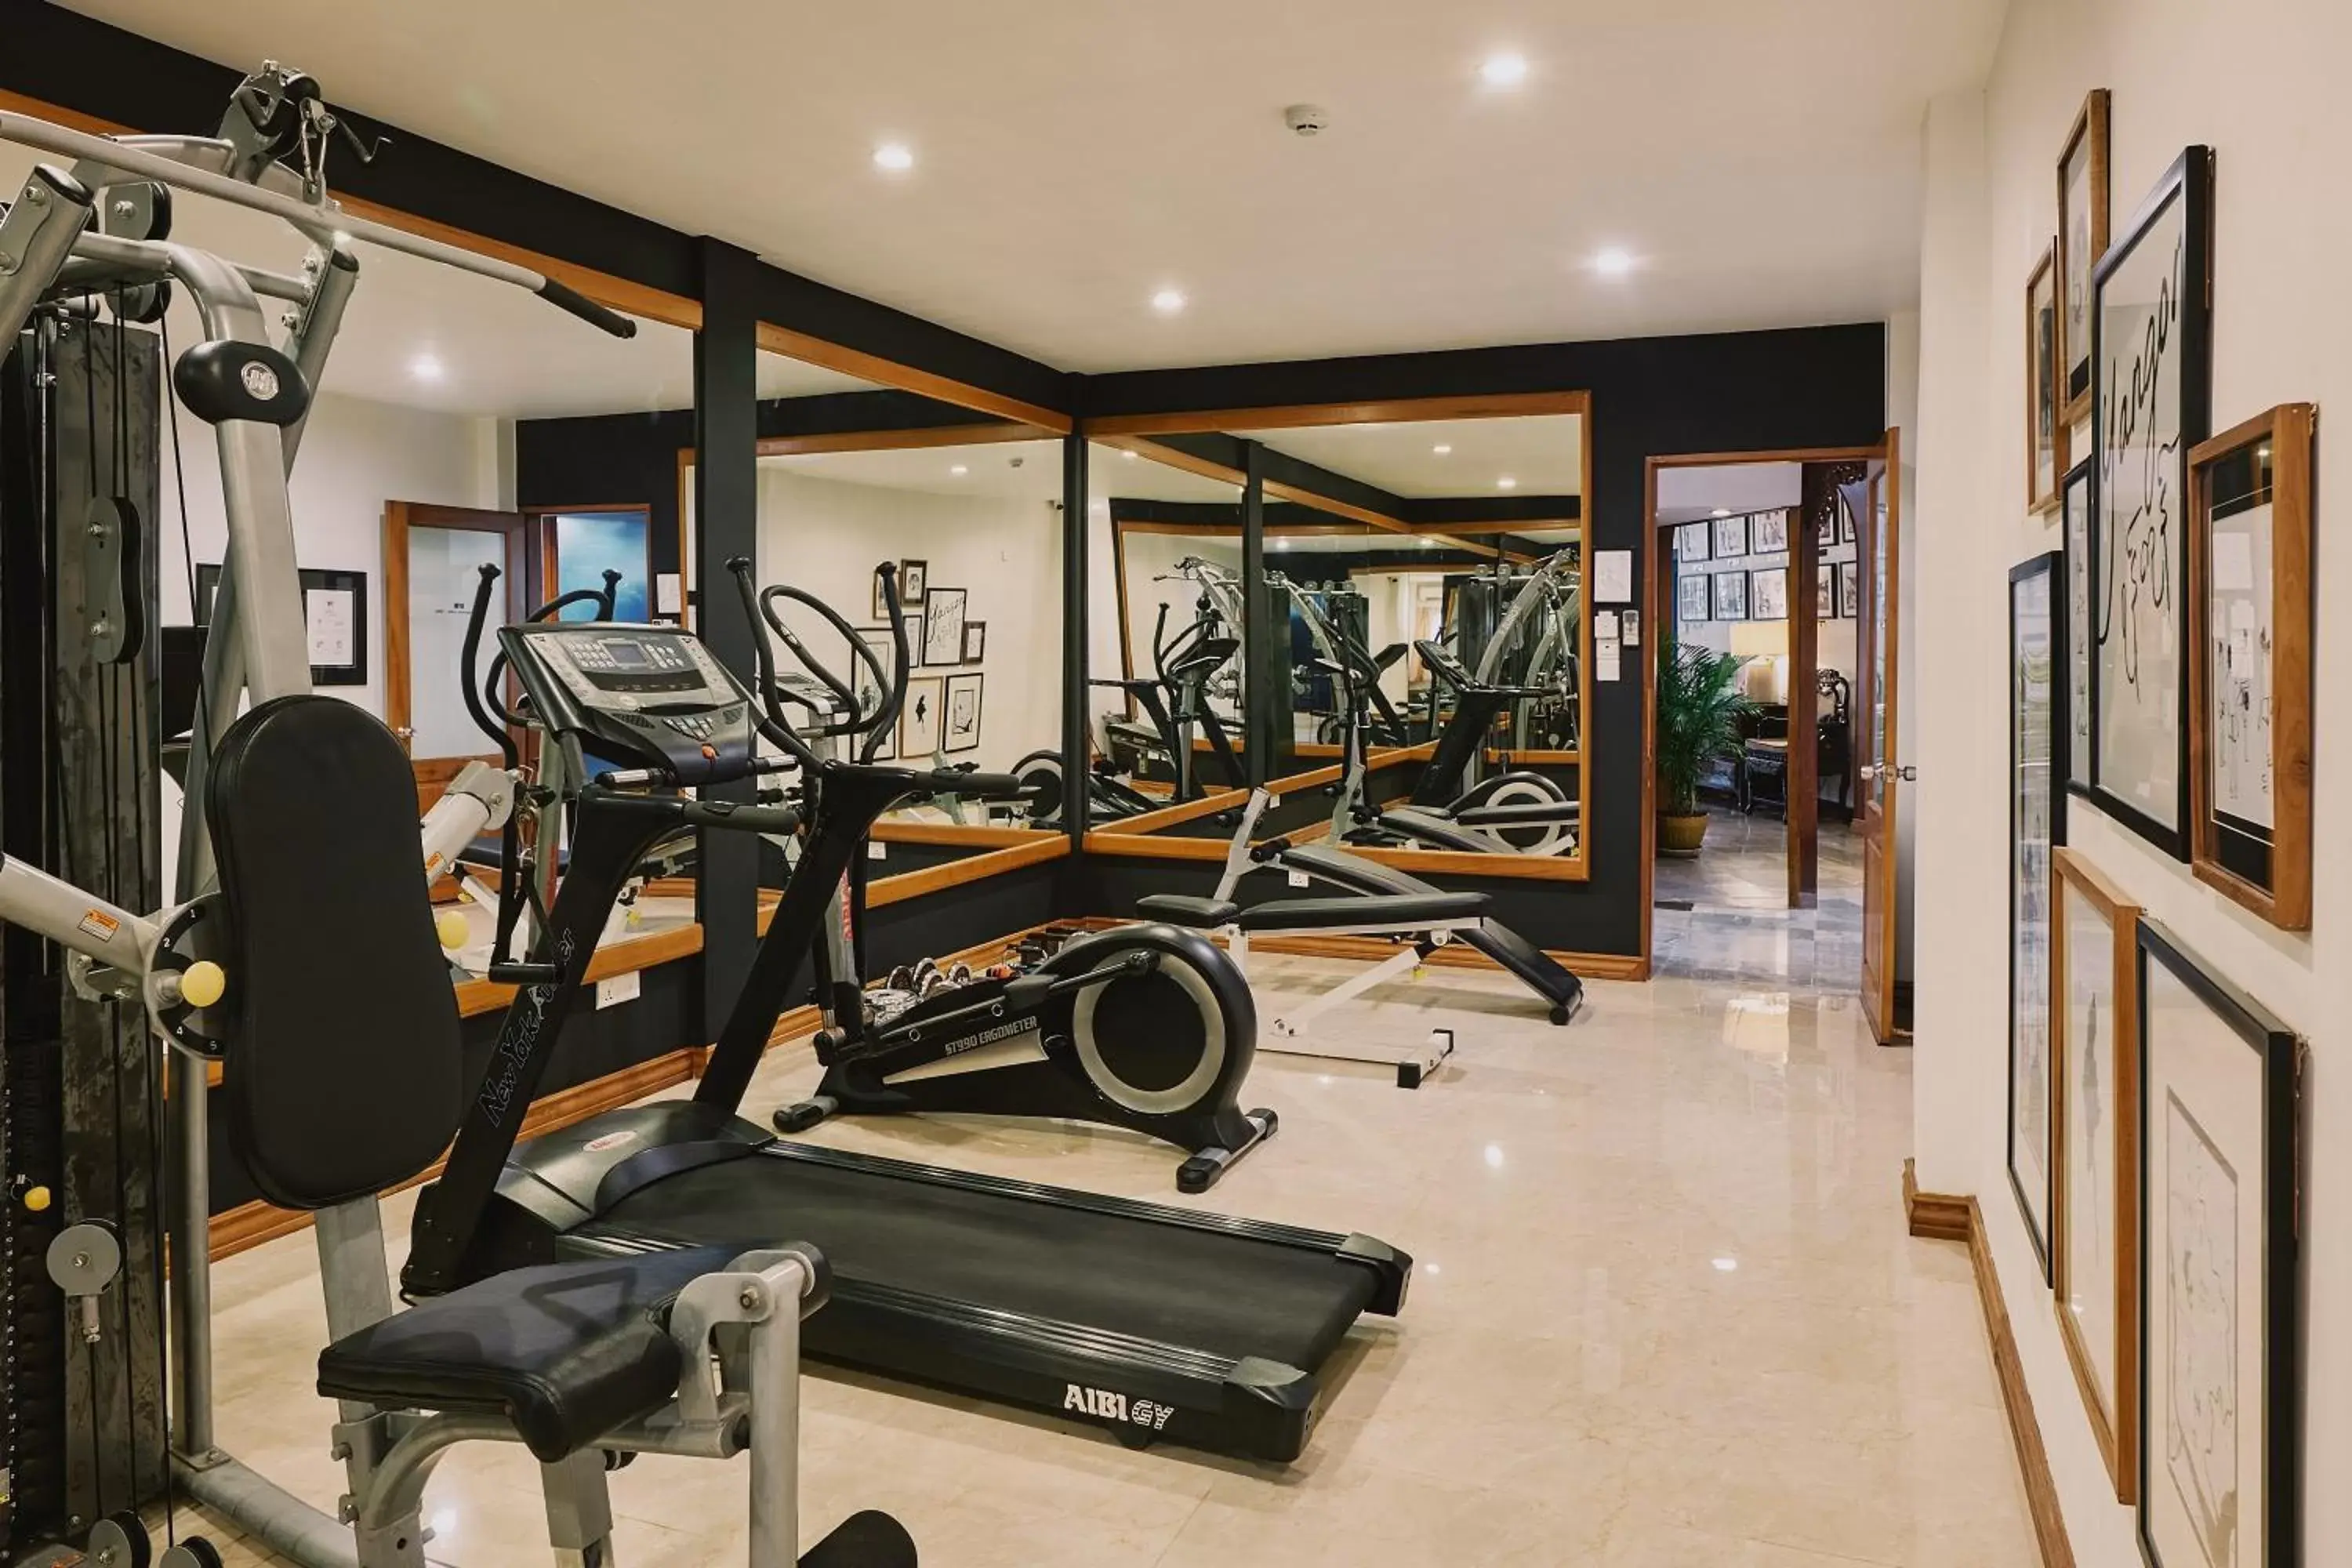 Fitness centre/facilities, Fitness Center/Facilities in Winner Inn